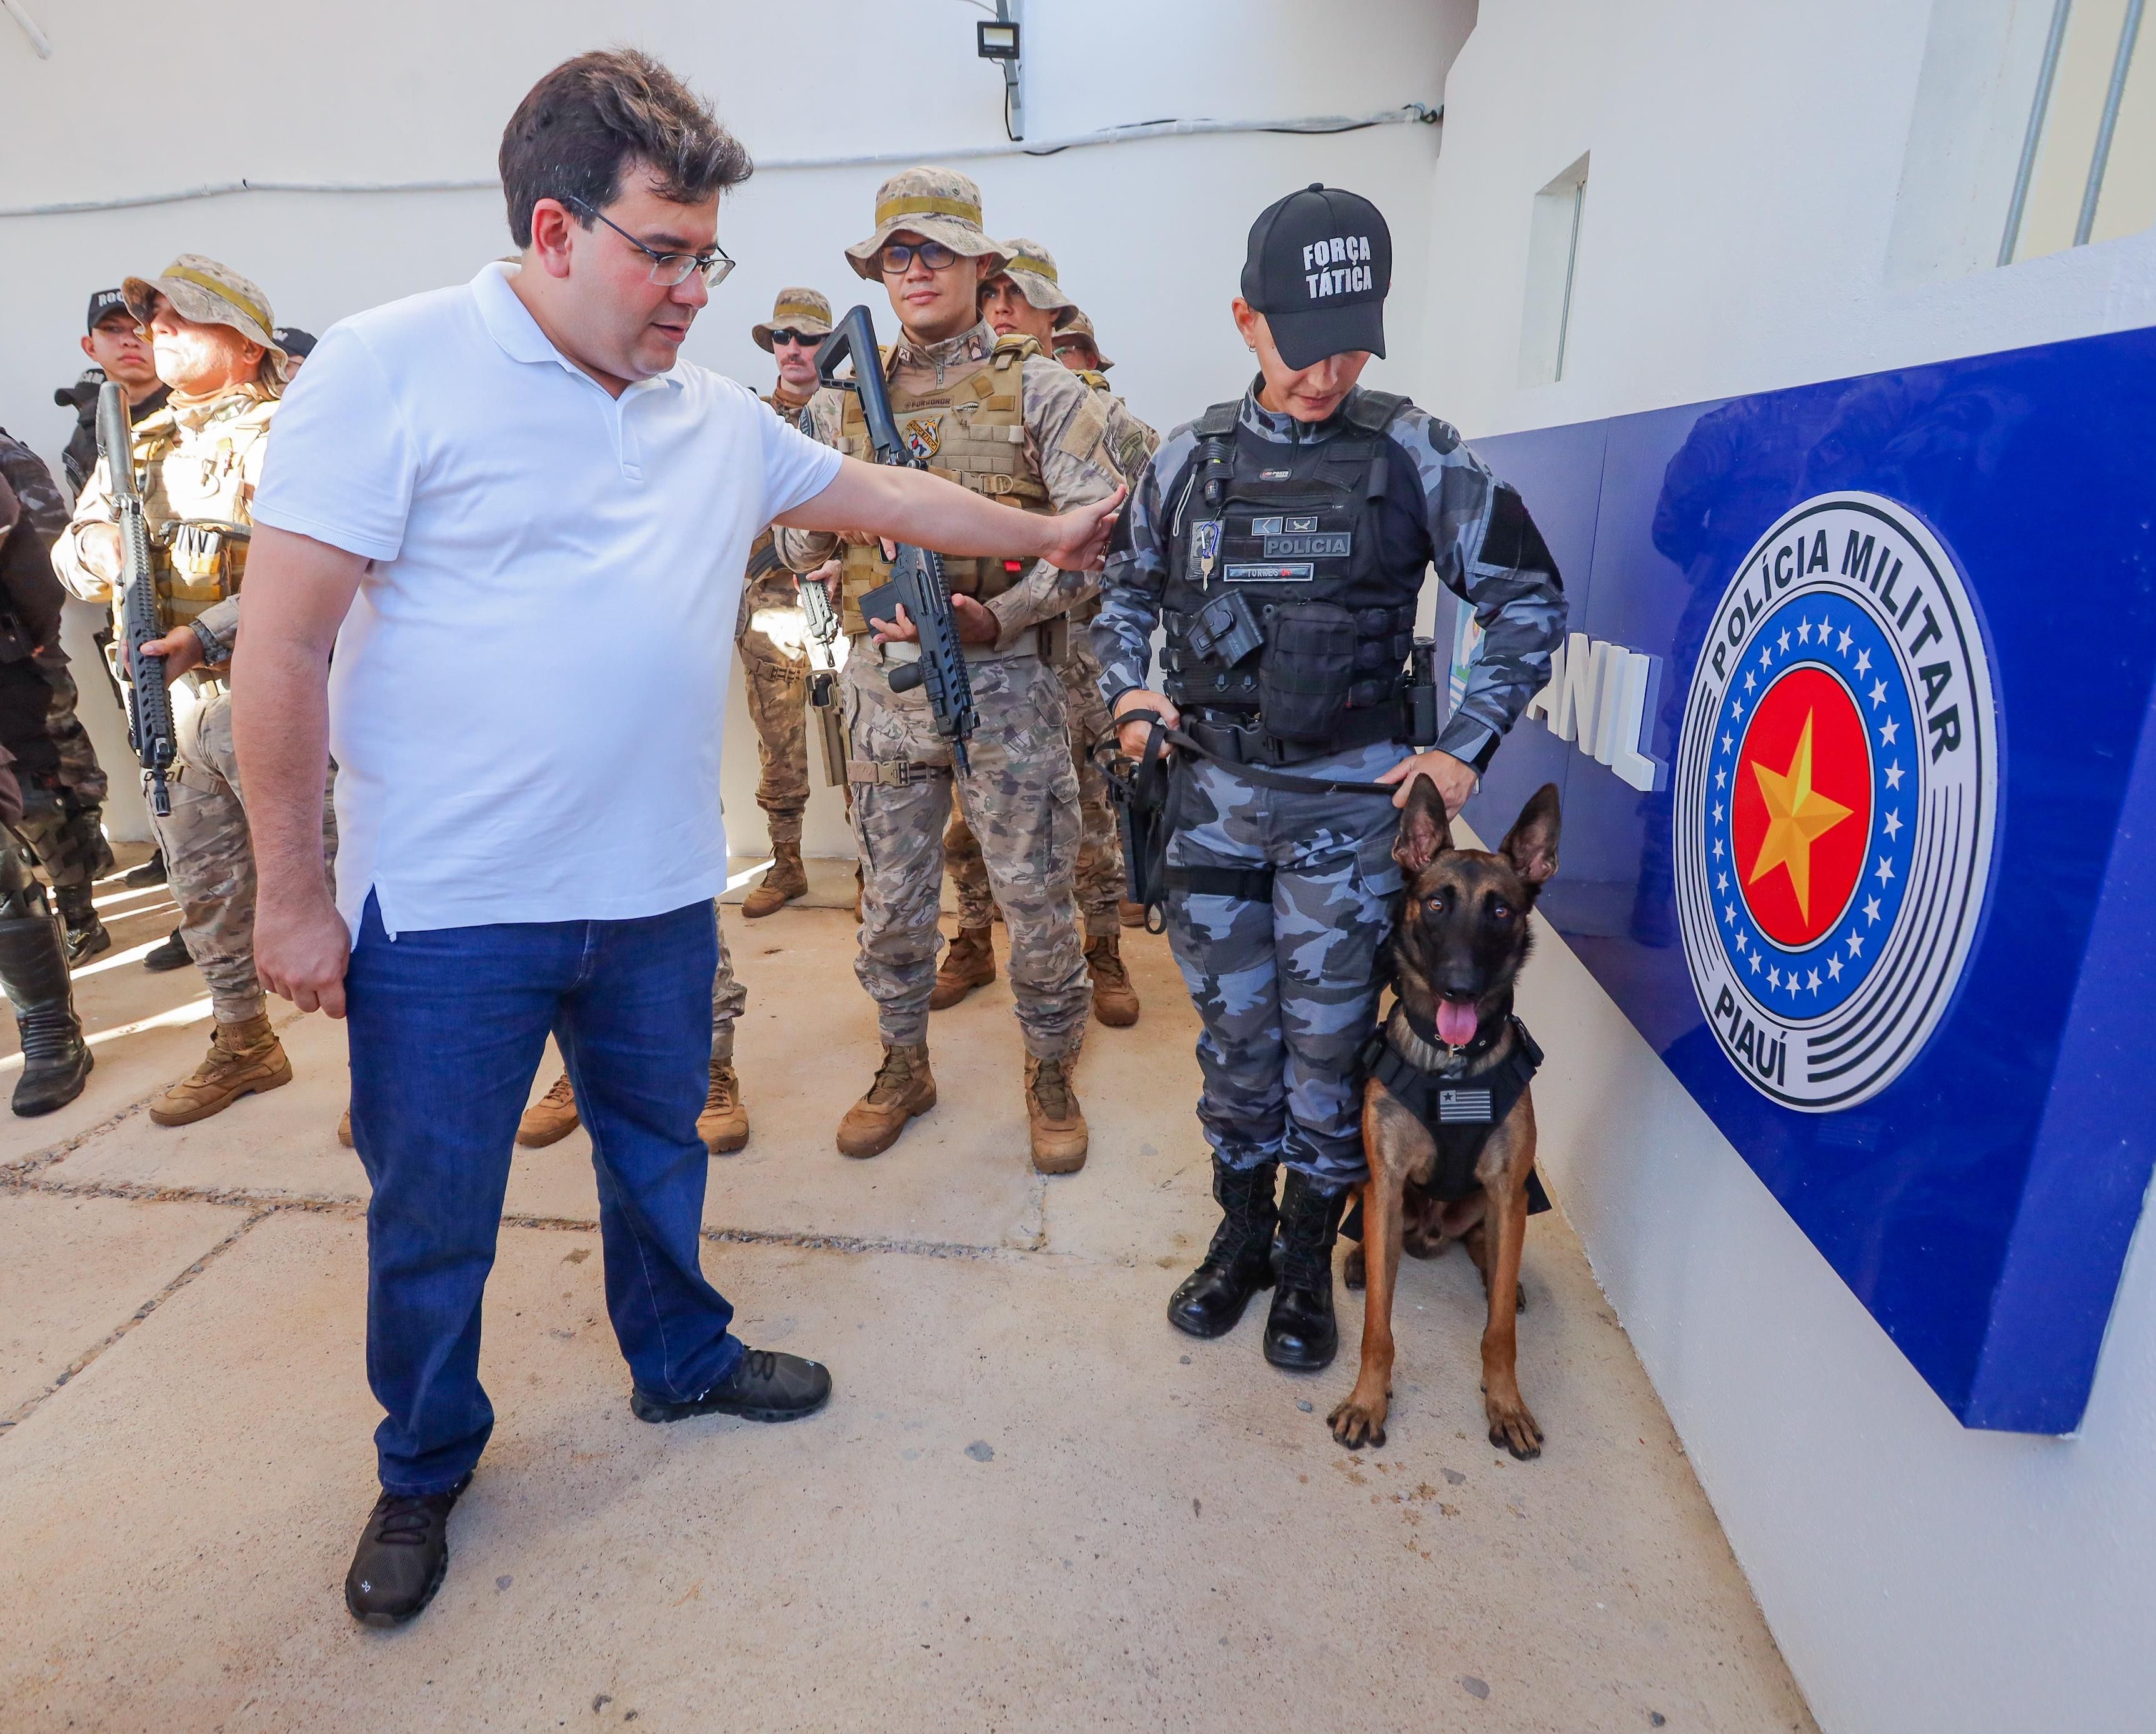 Governador Rafael Fonteles inaugura a nova sede do Batalhão da Polícia Militar, reforçando a segurança no município